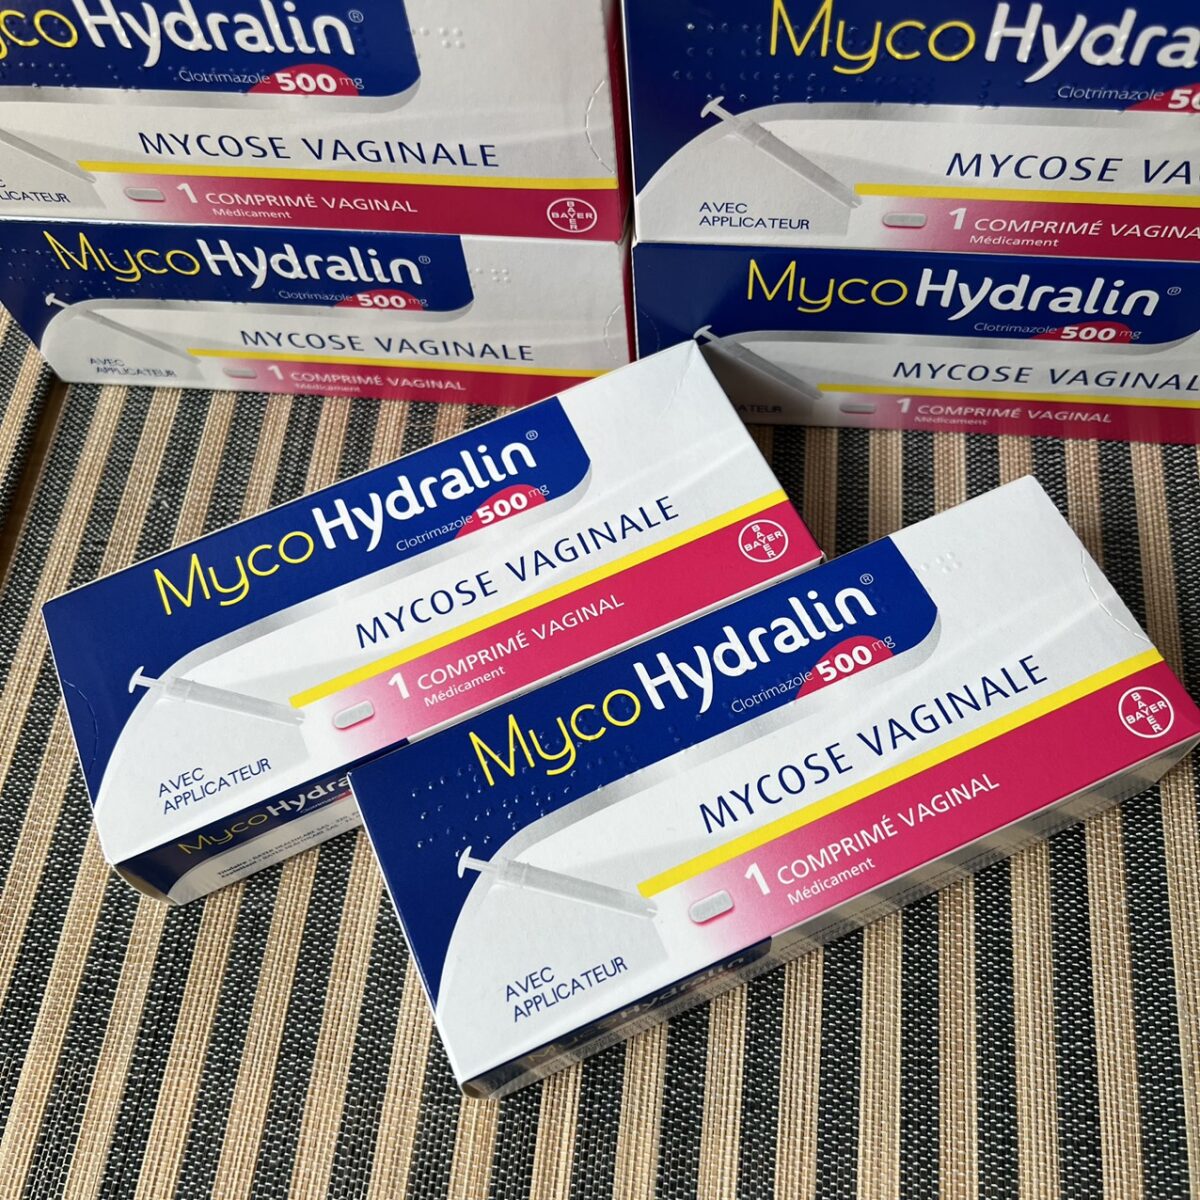 CHÍNH HÃNG] Thuốc MycoHydralin 500mg - Thuốc điều trị viêm âm đạo